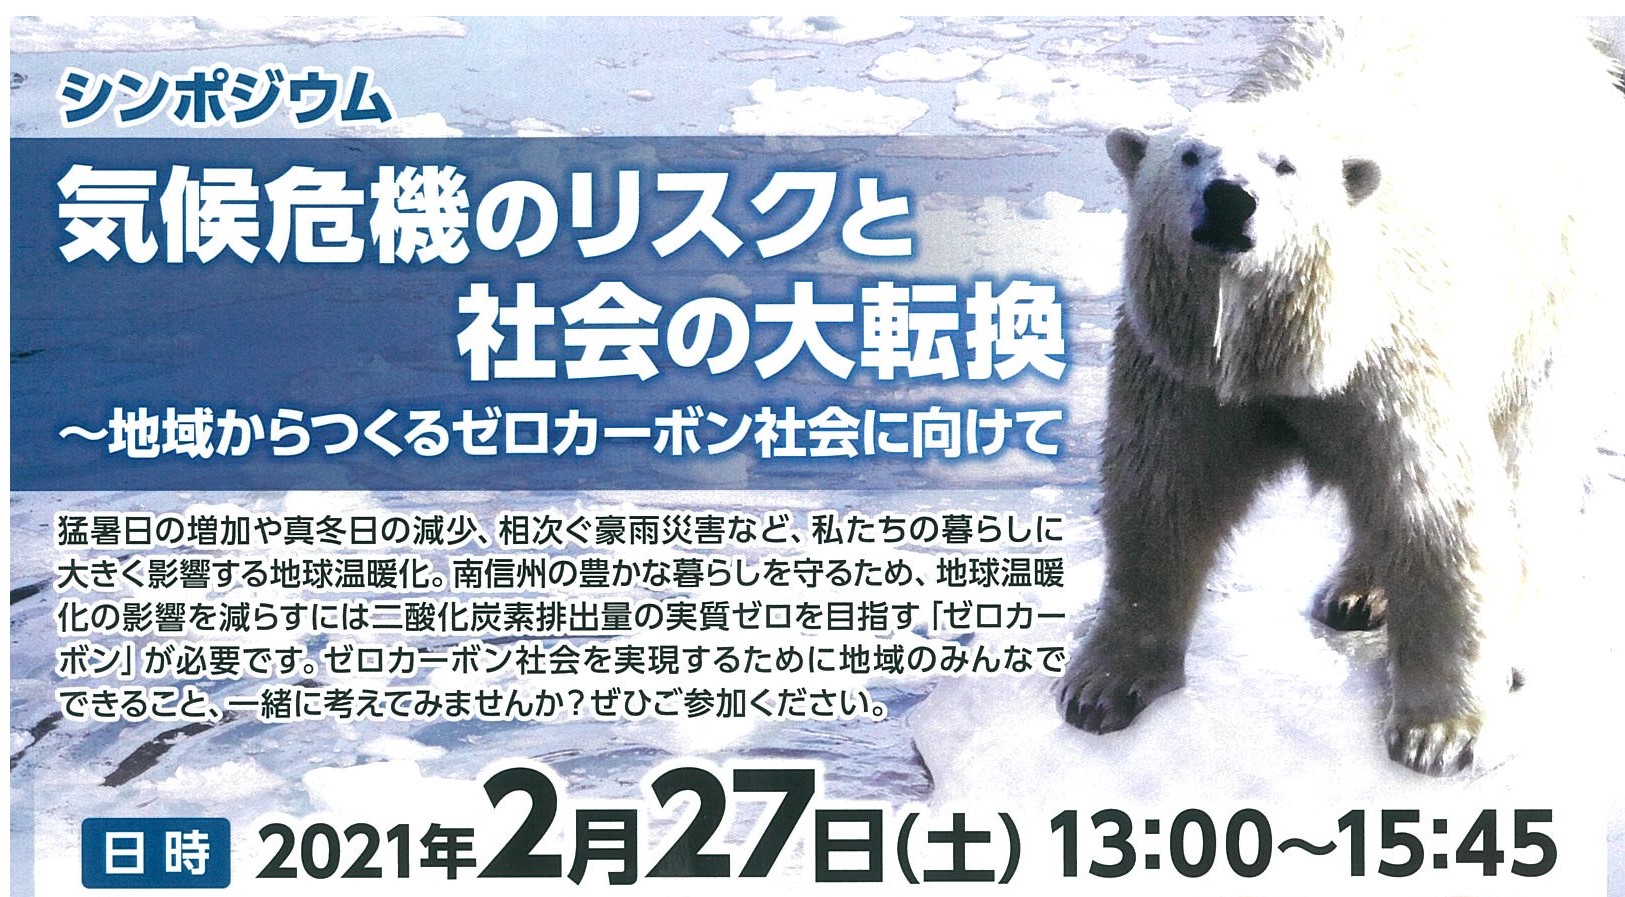 【オンライン開催】2/27,気候変動対策シンポジウム